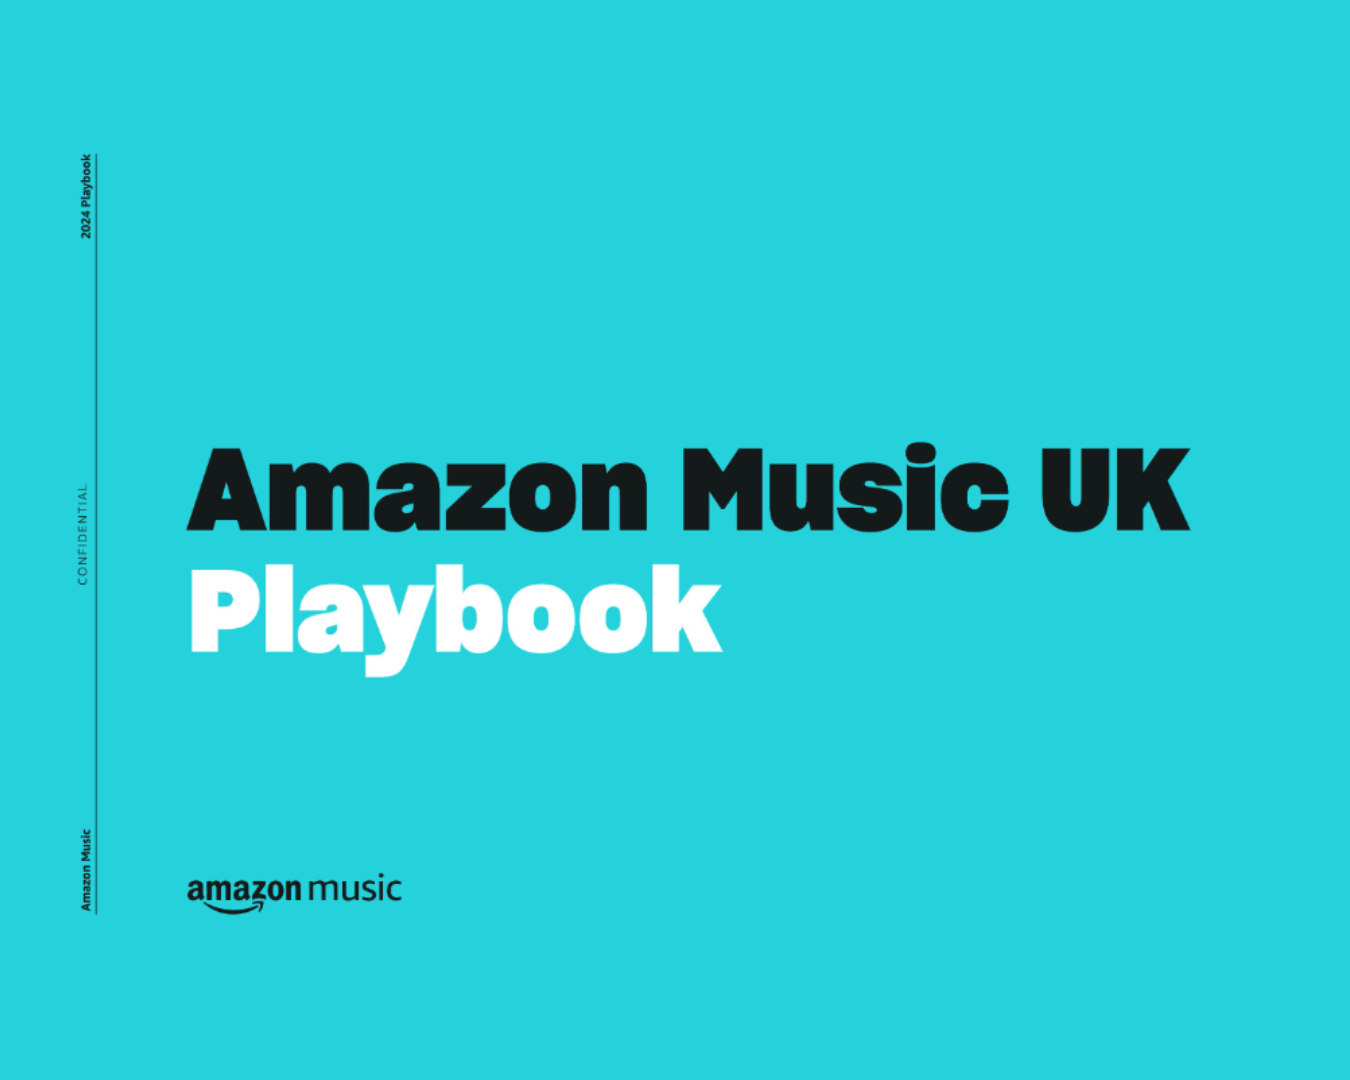 Amazon Music UK Playbook